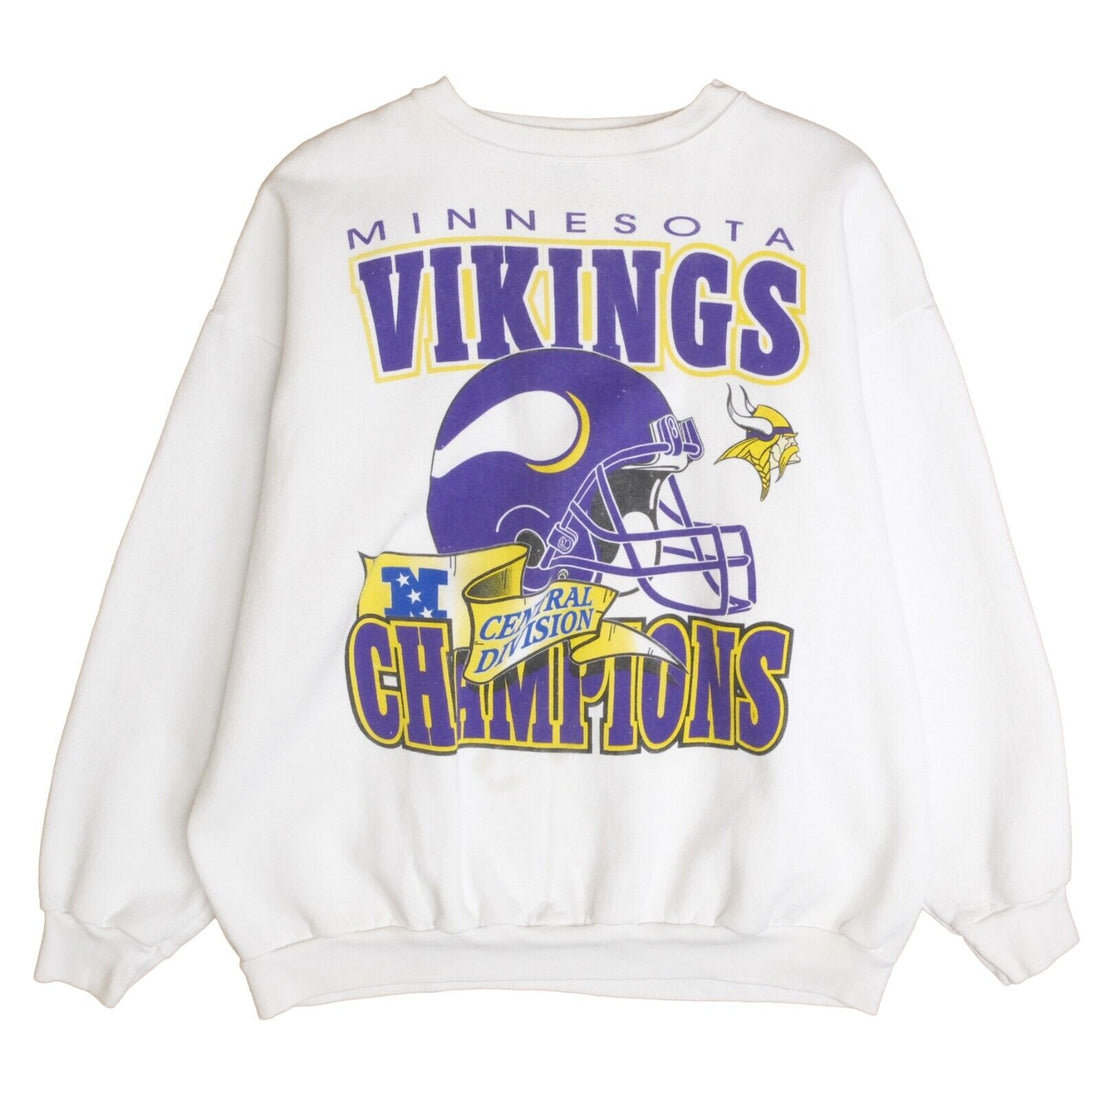 Vintage Minnesota Vikings Central Division Champs Sweatshirt Crewneck XL 90s NFL